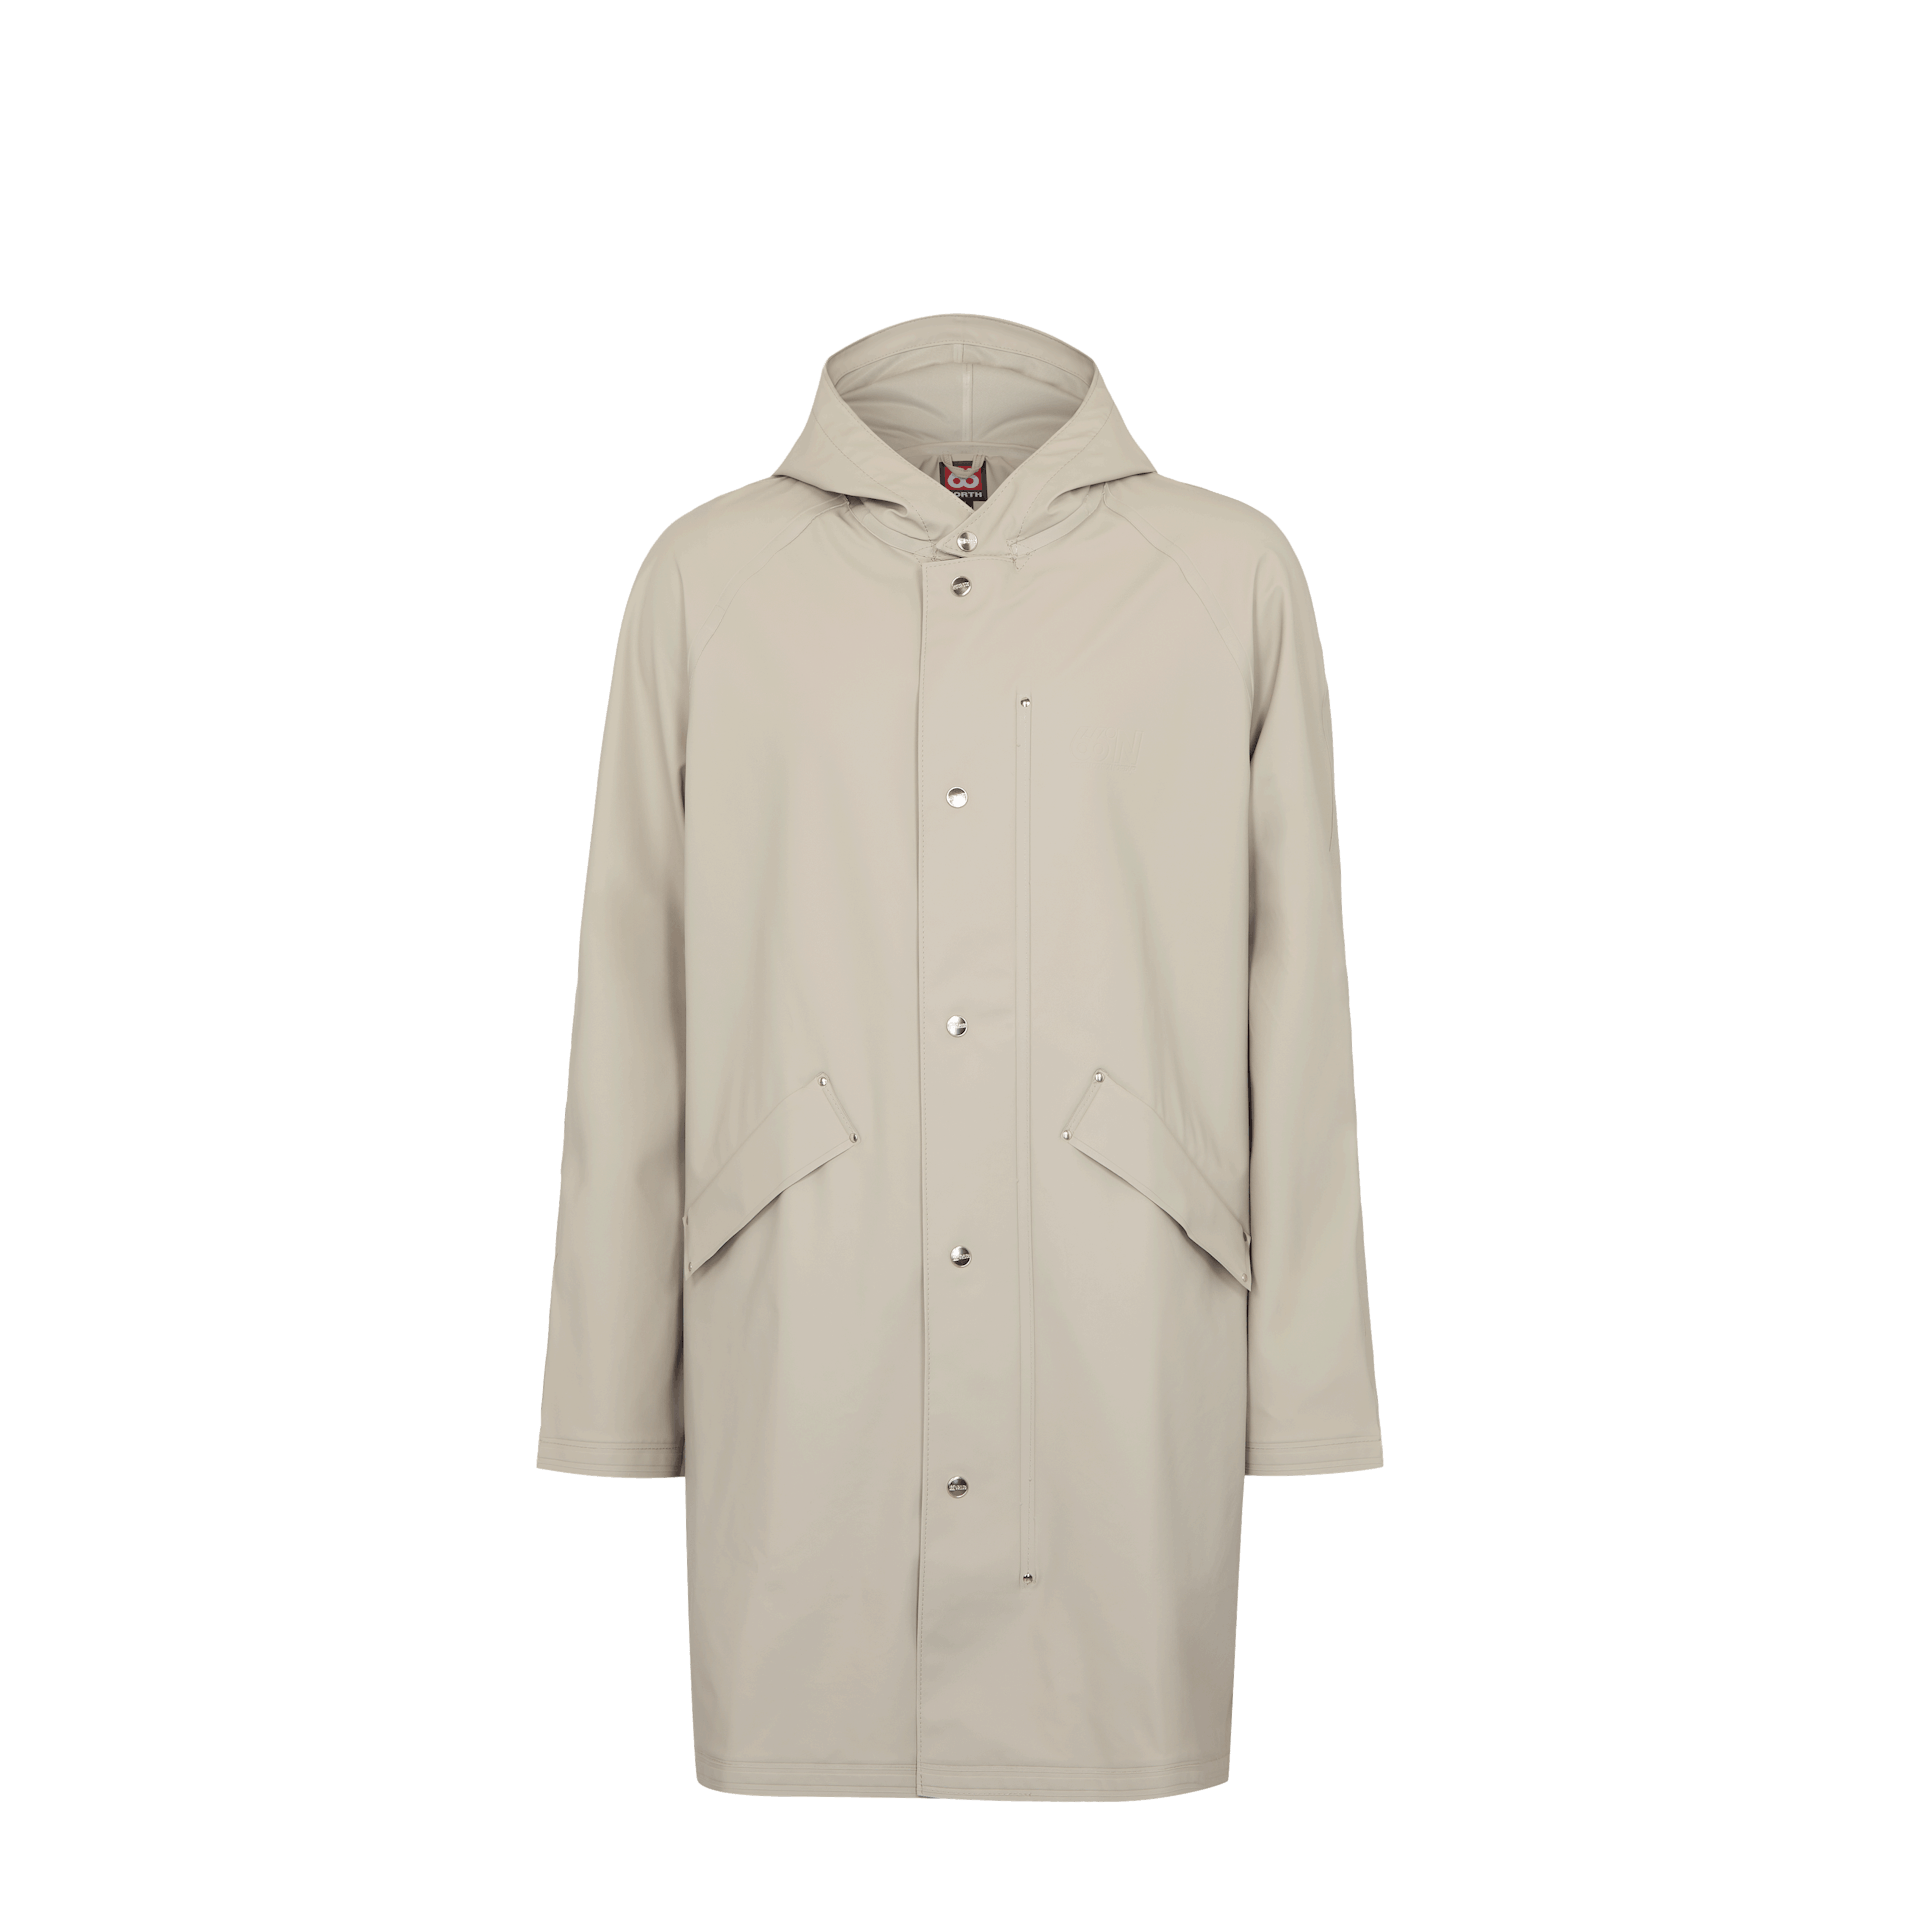 Skipagata Hooded Rain Coat